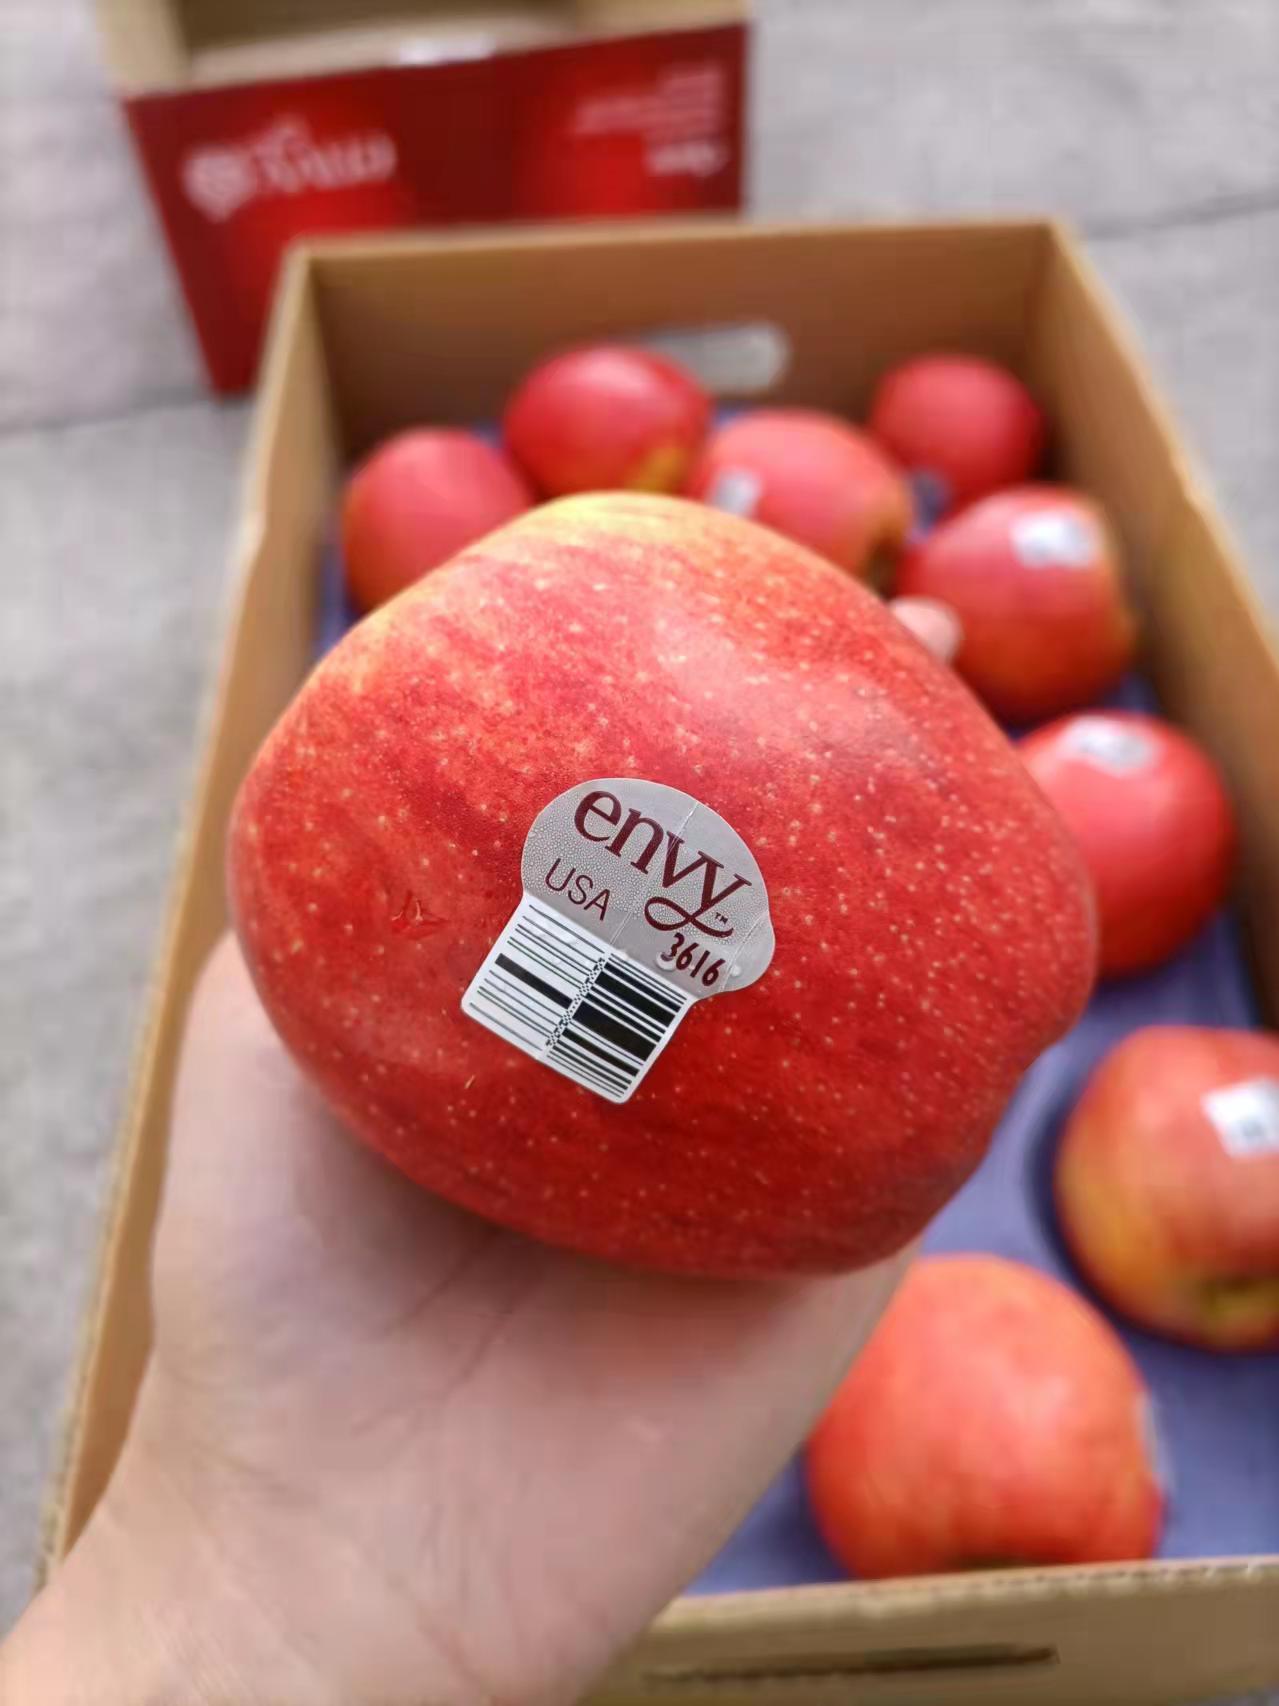 美国envy爱妃苹果苹果含有天然果胶vc微量元素锌营养丰富果色浓艳红润